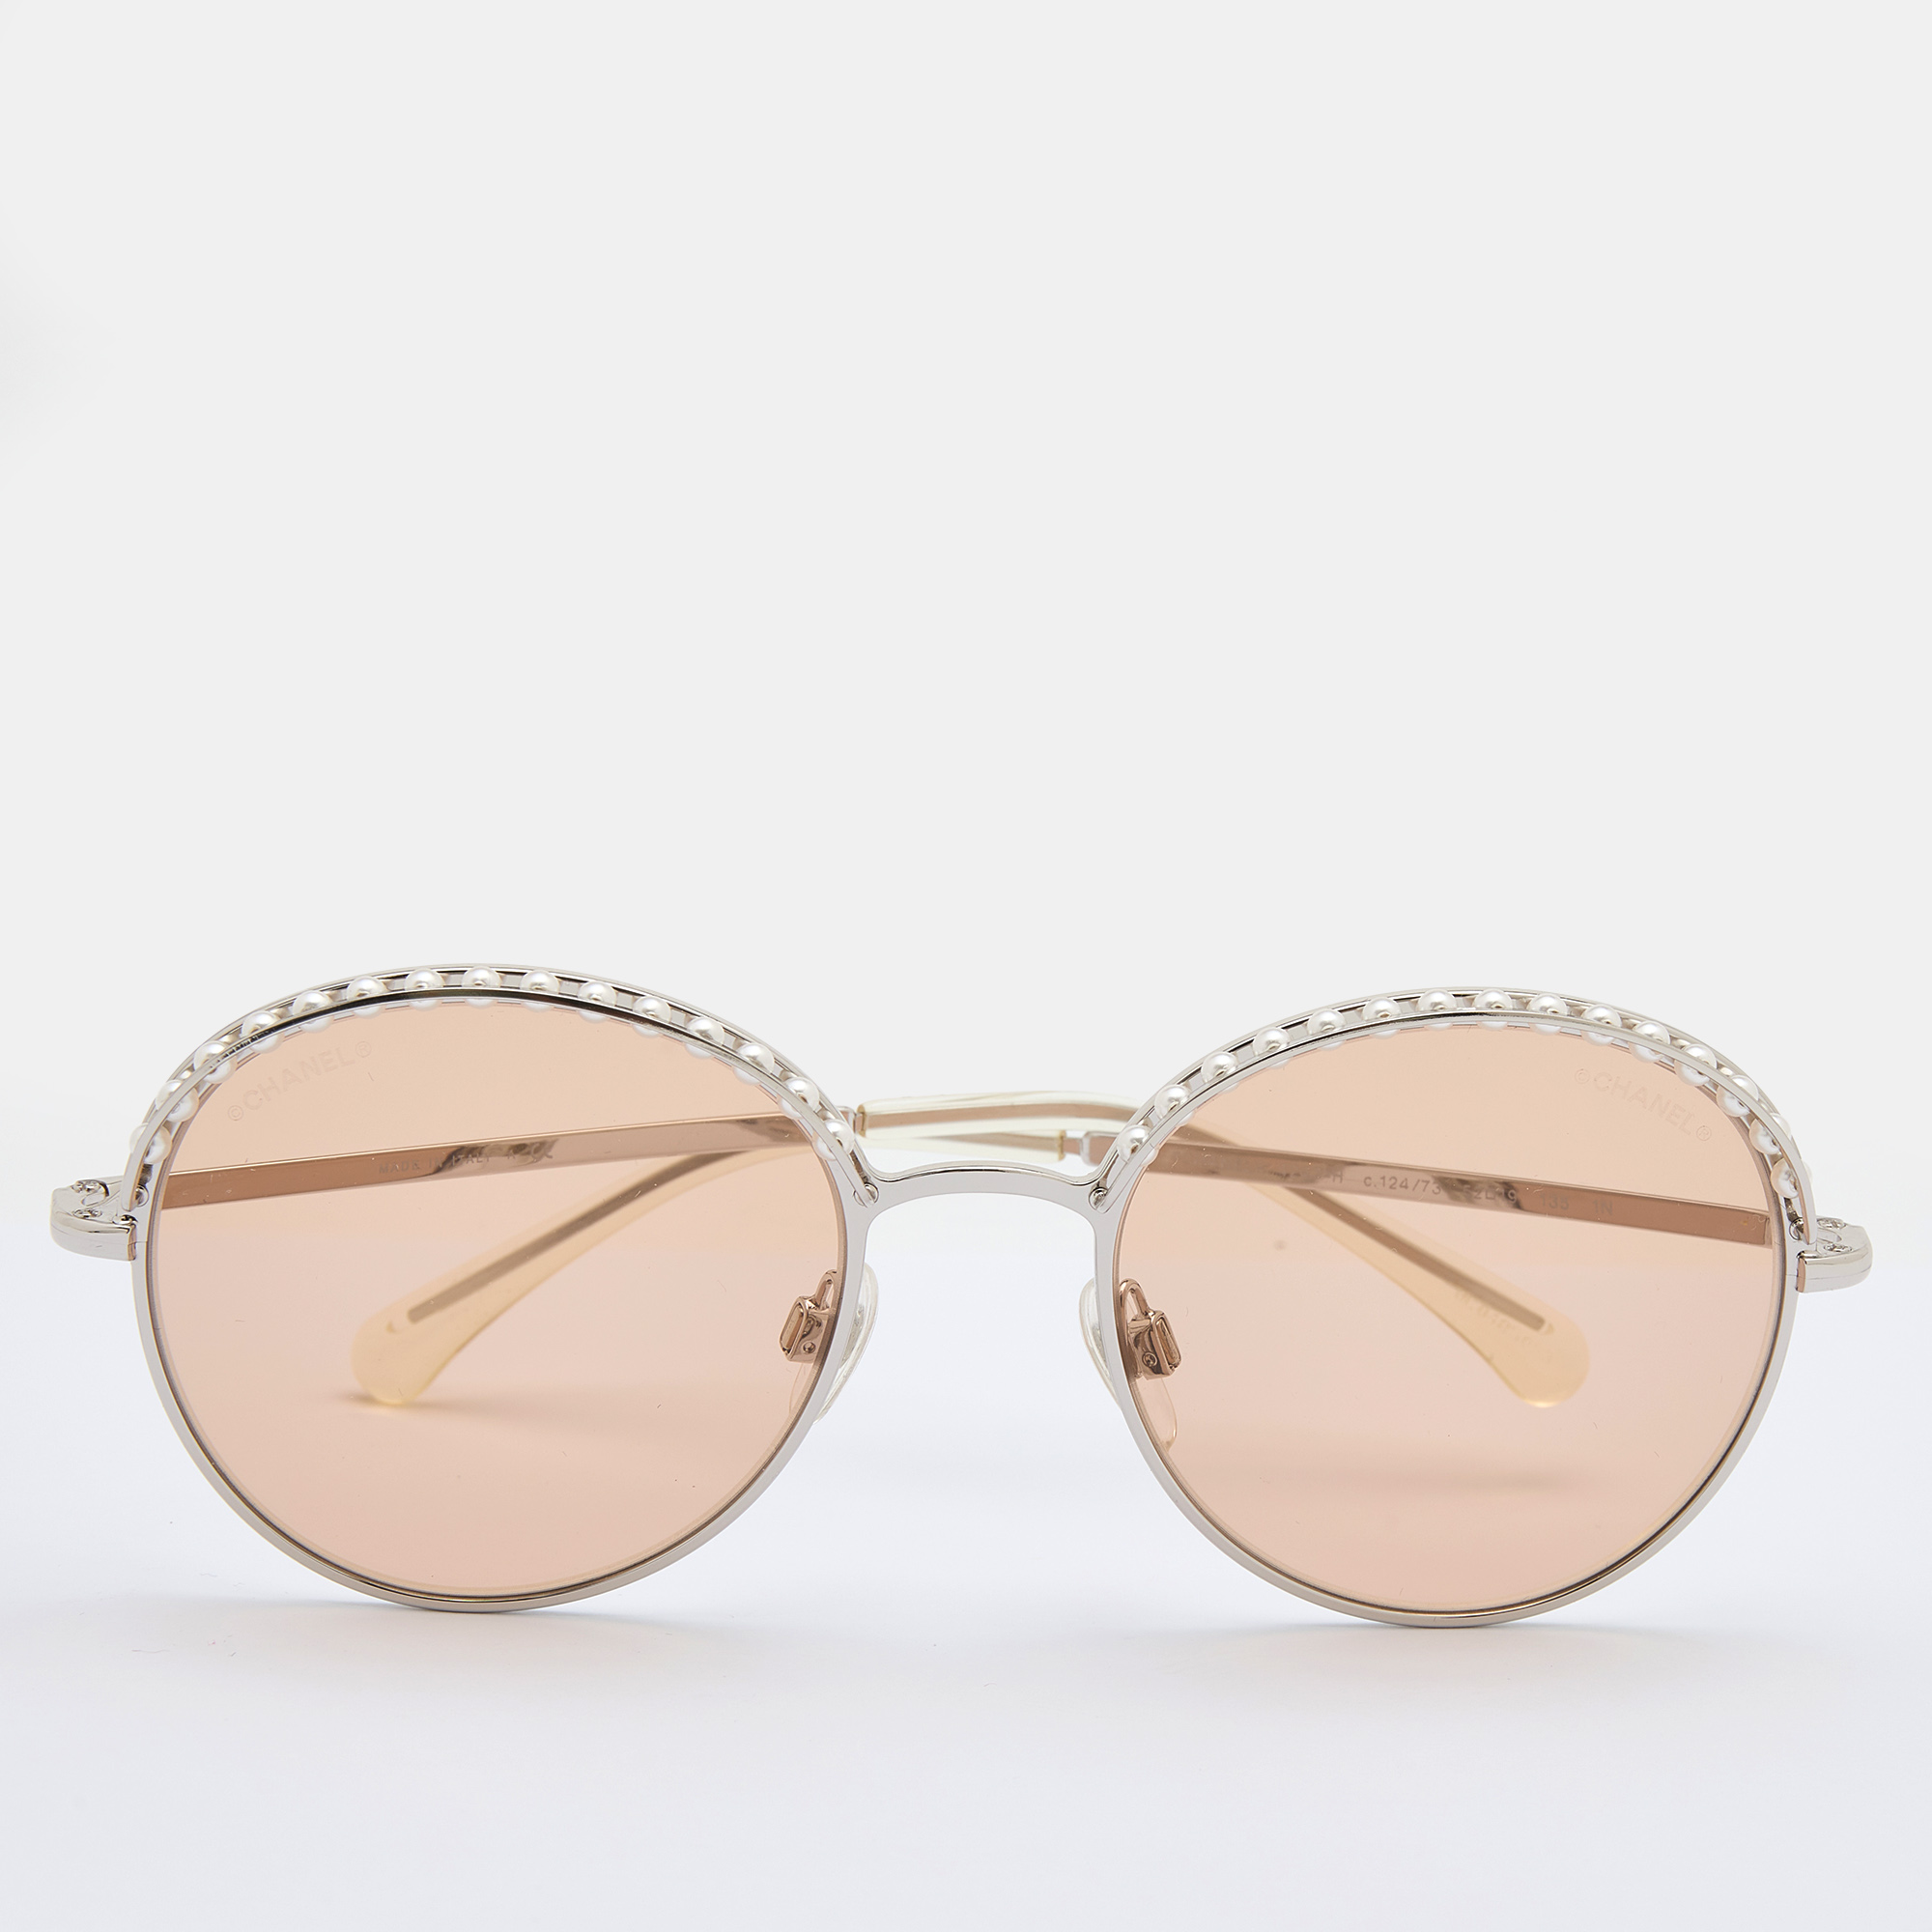 Chanel Silver Tone/ Beige 4247-H Pearl Round Sunglasses